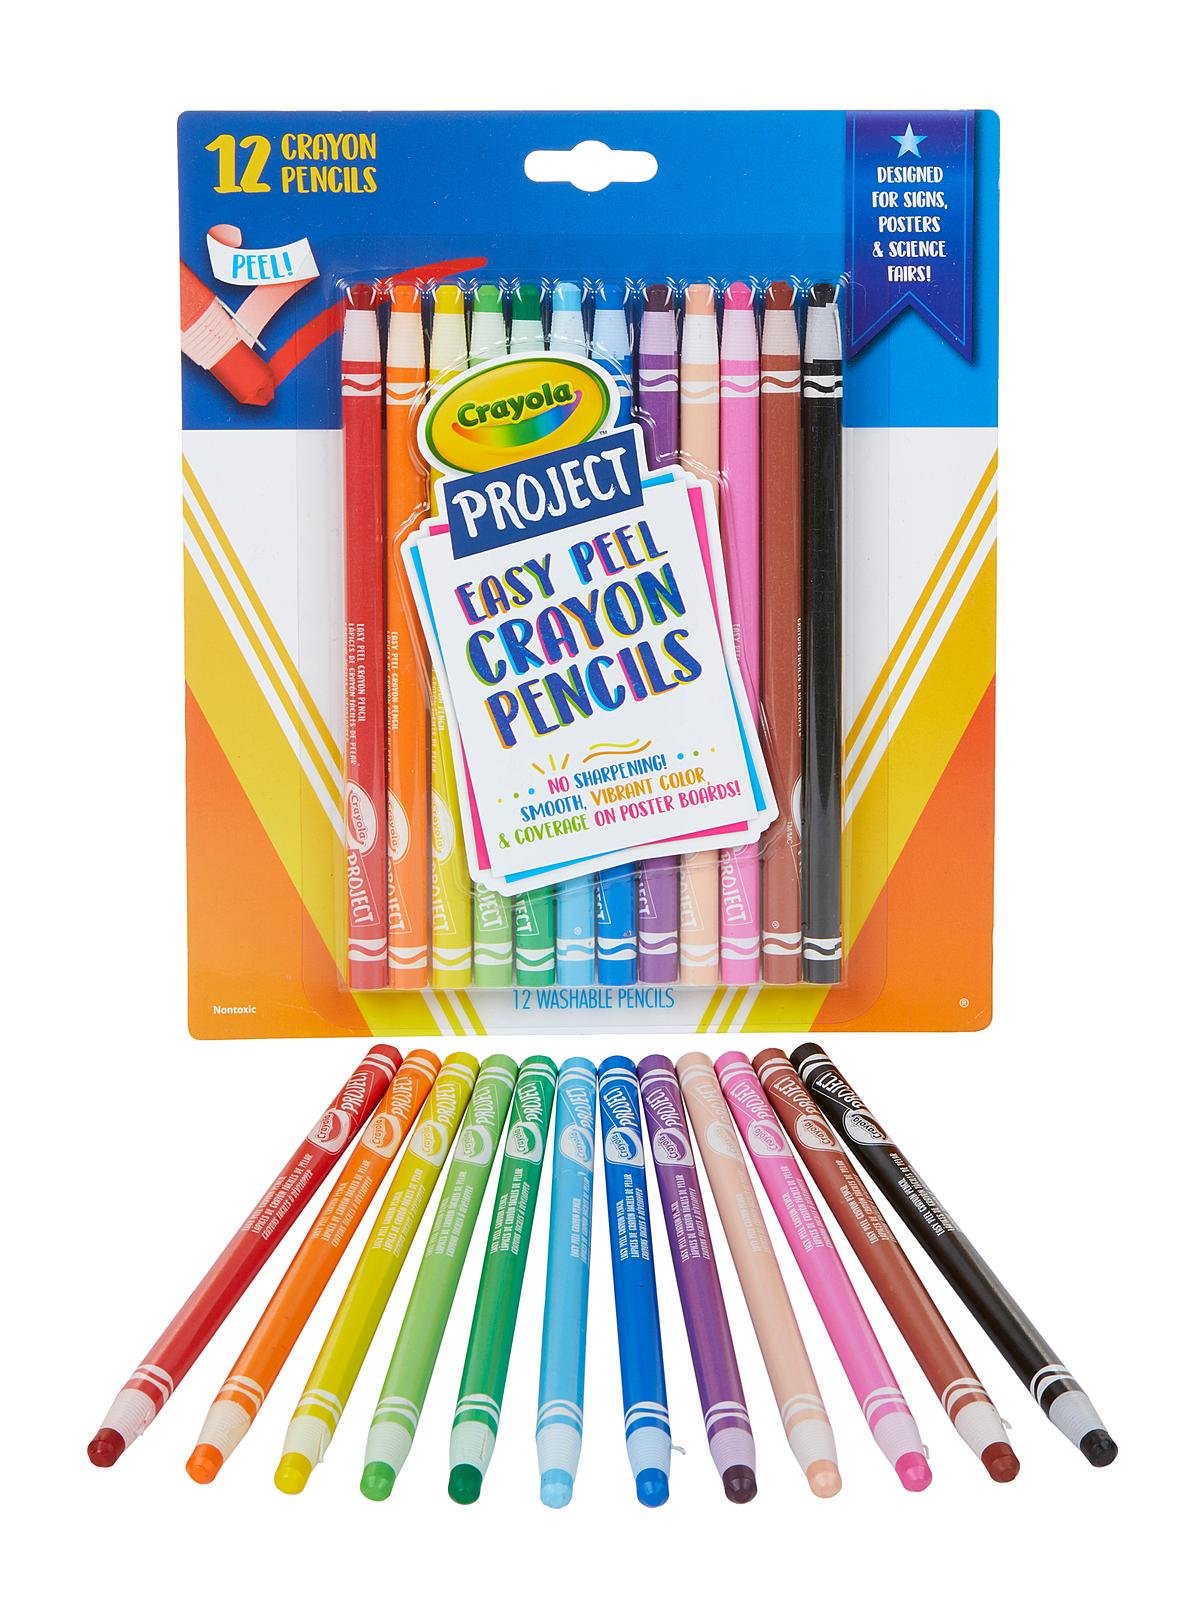 Crayola - Project Easy-Peel Crayon Pencils